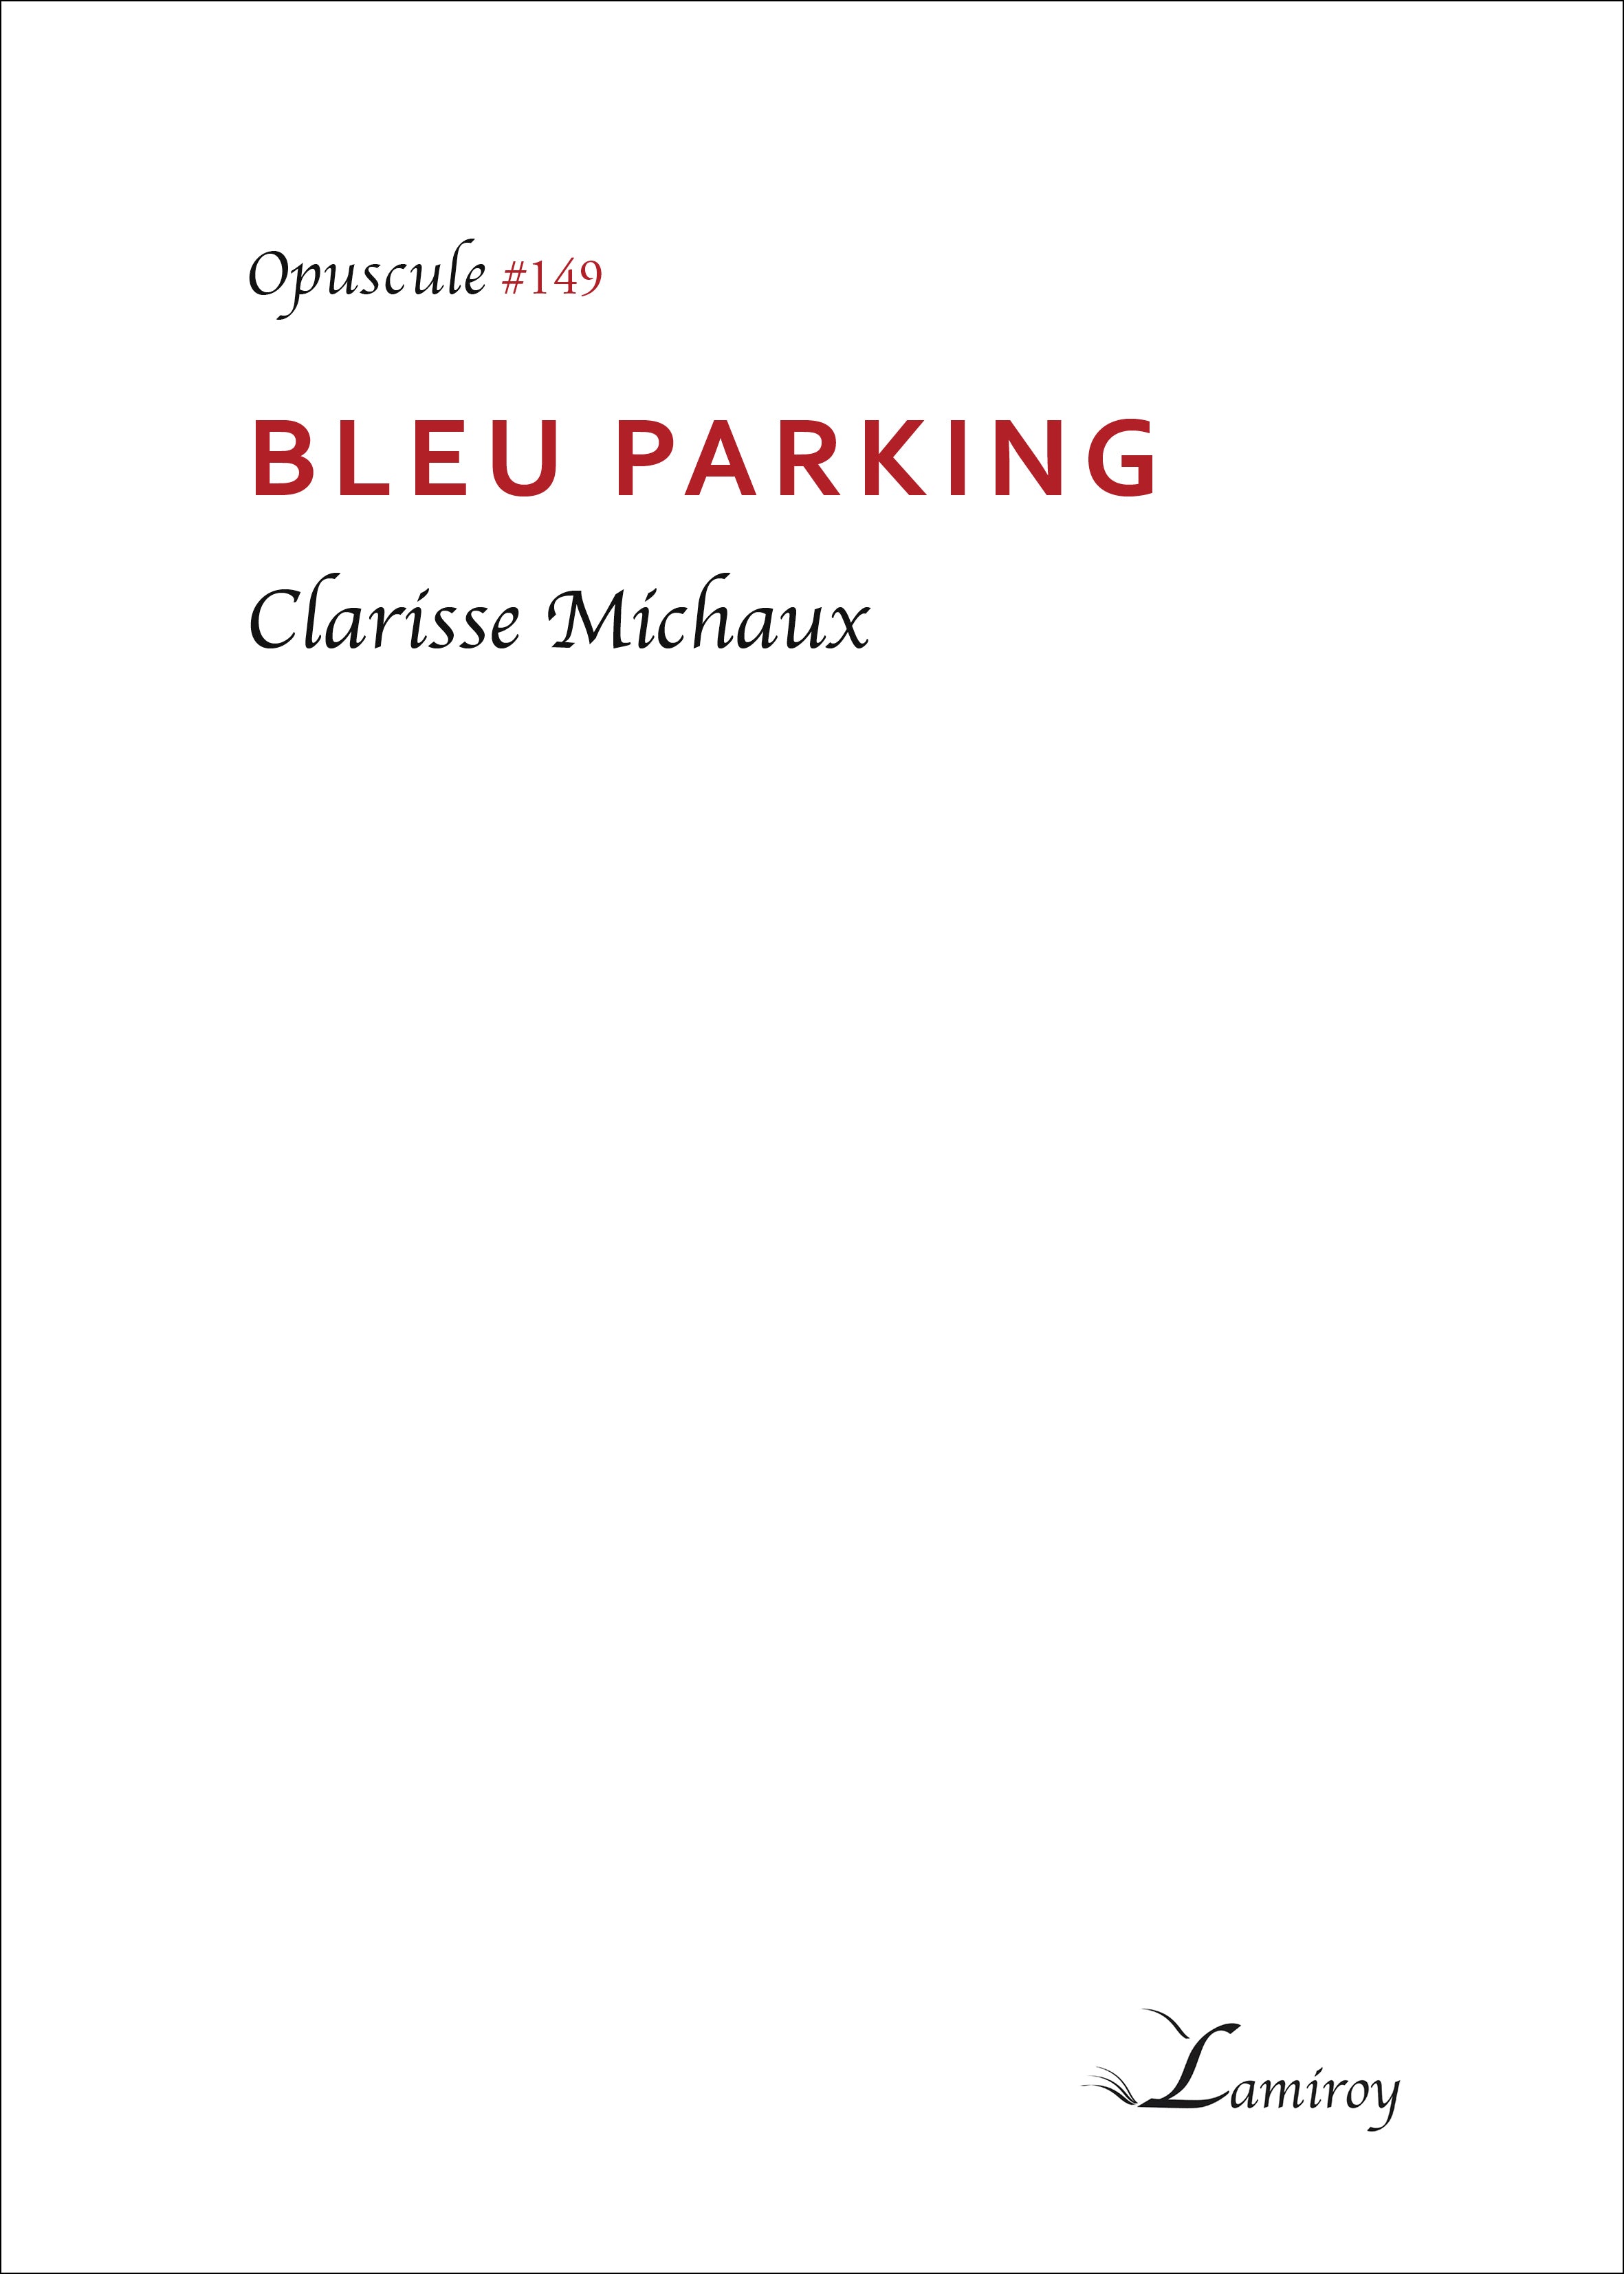 Bleu parking #149